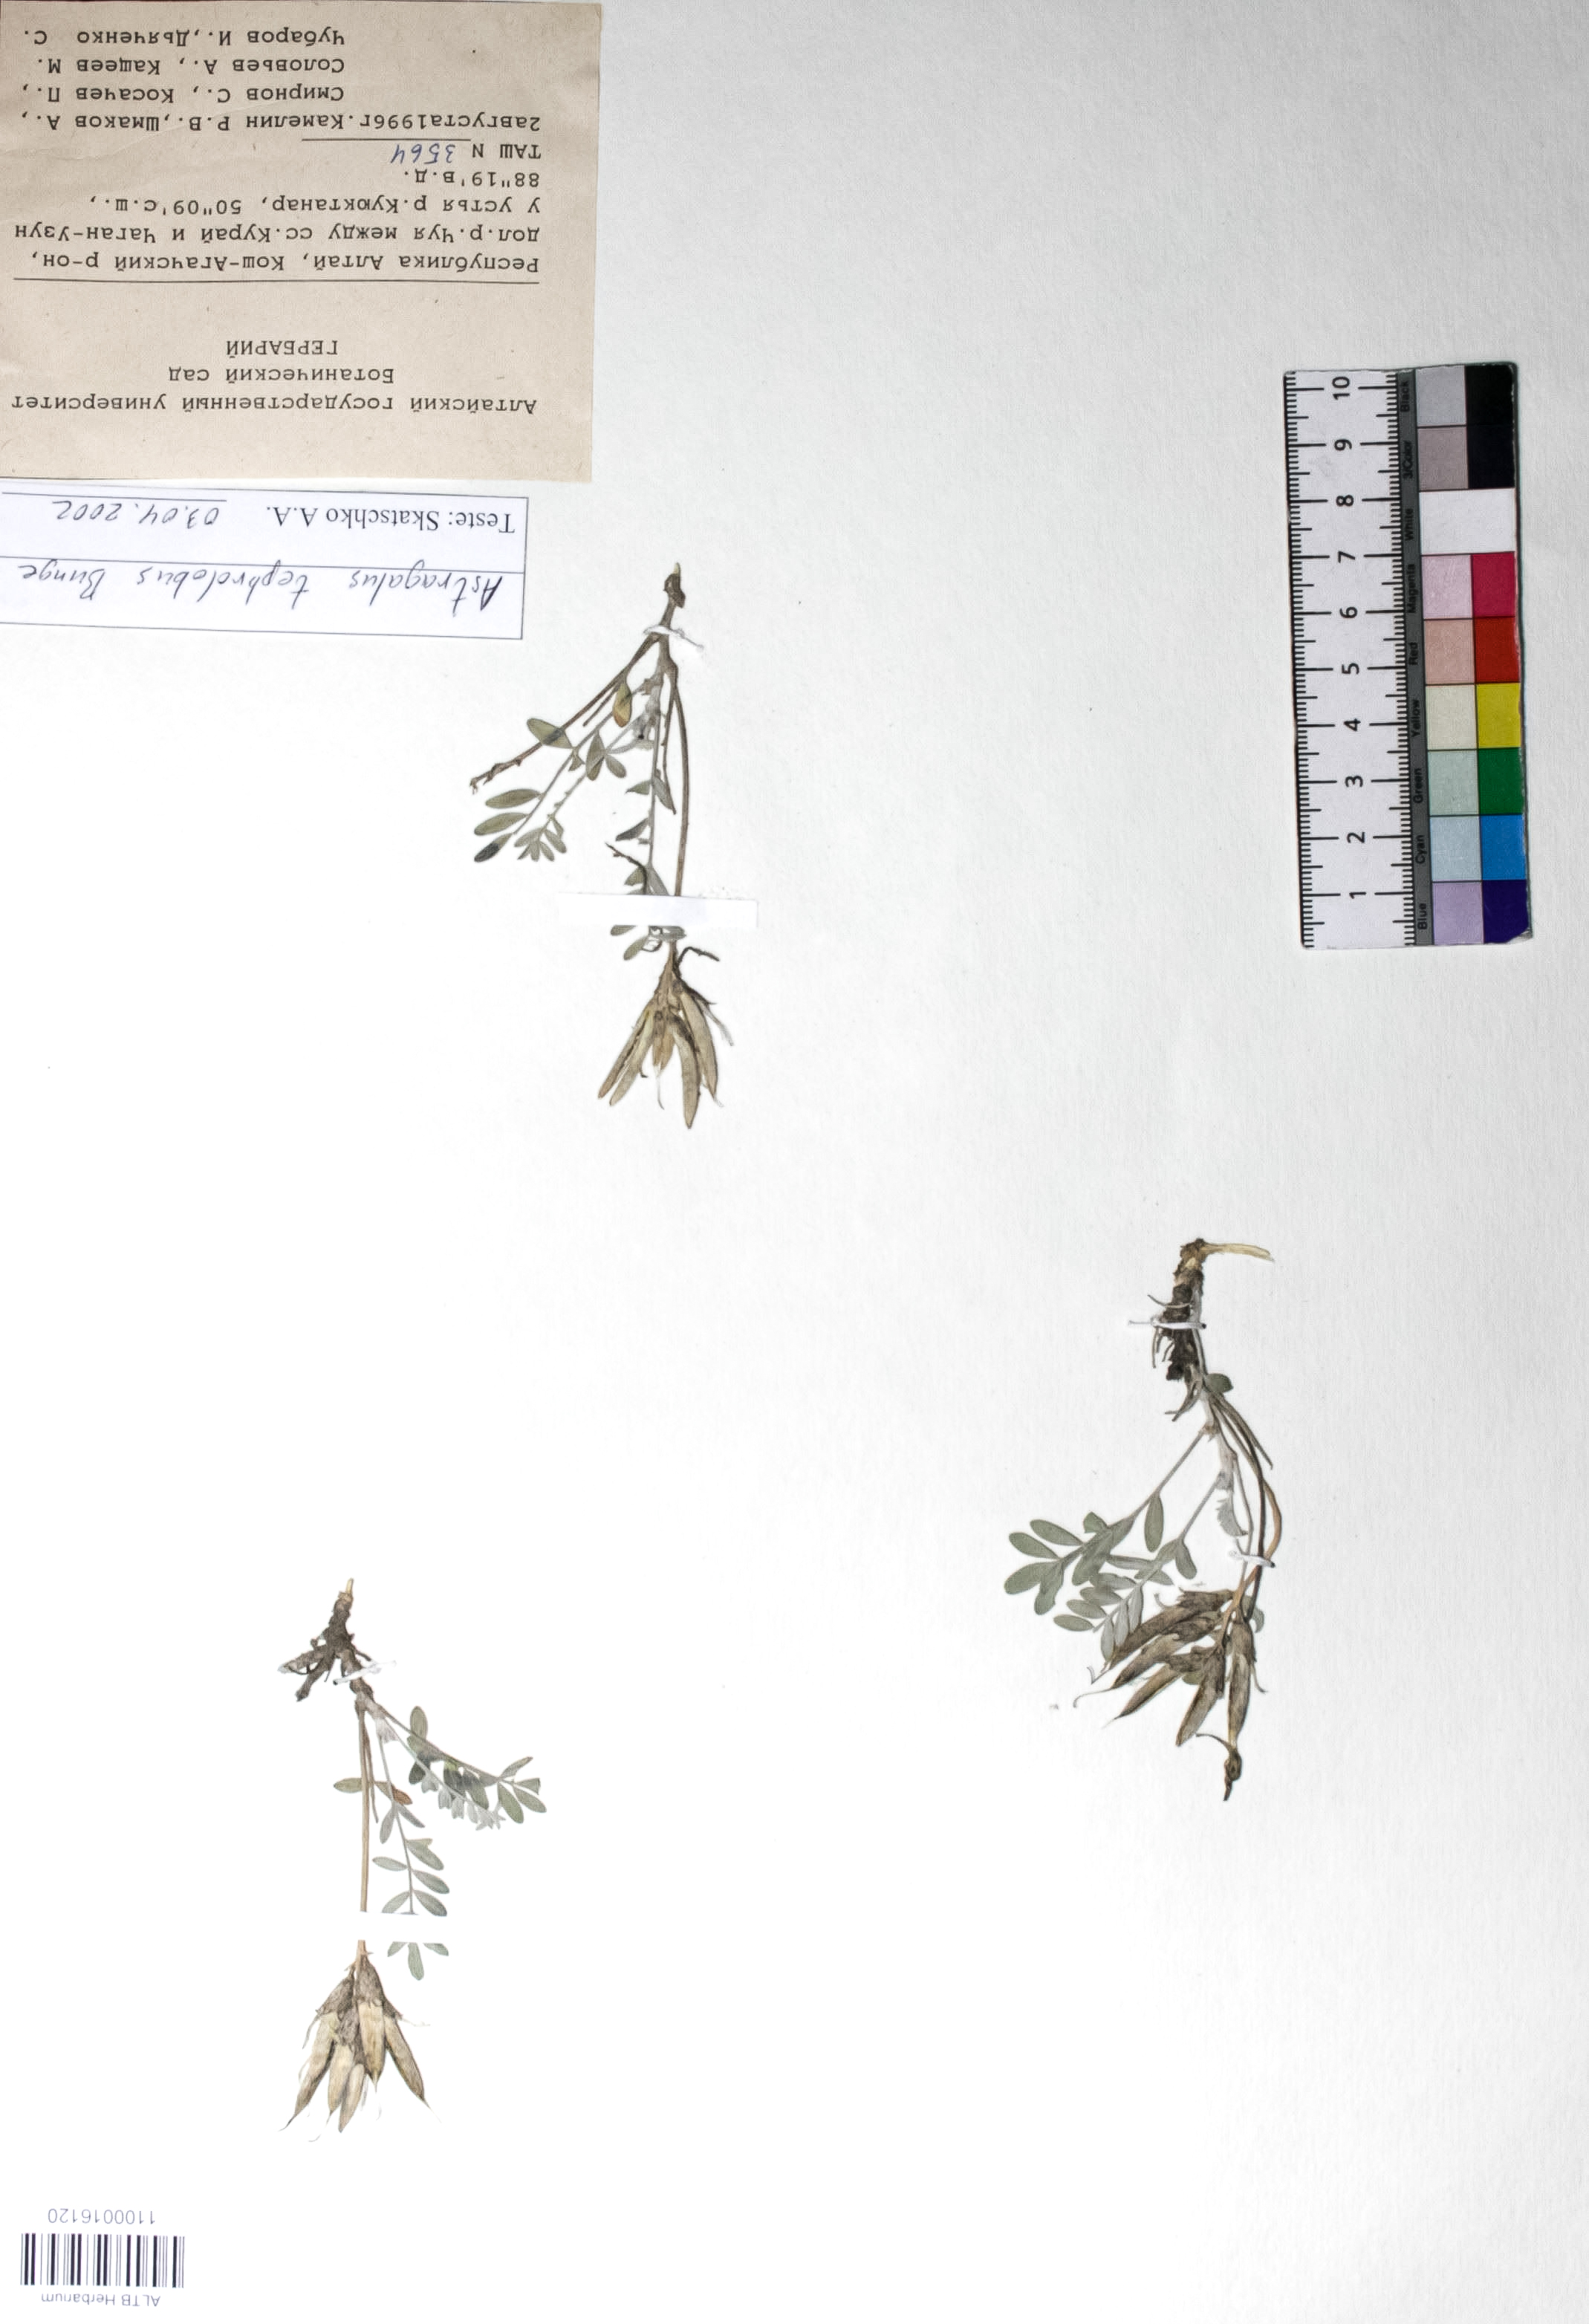 Astragalus tephrolobus Bunge